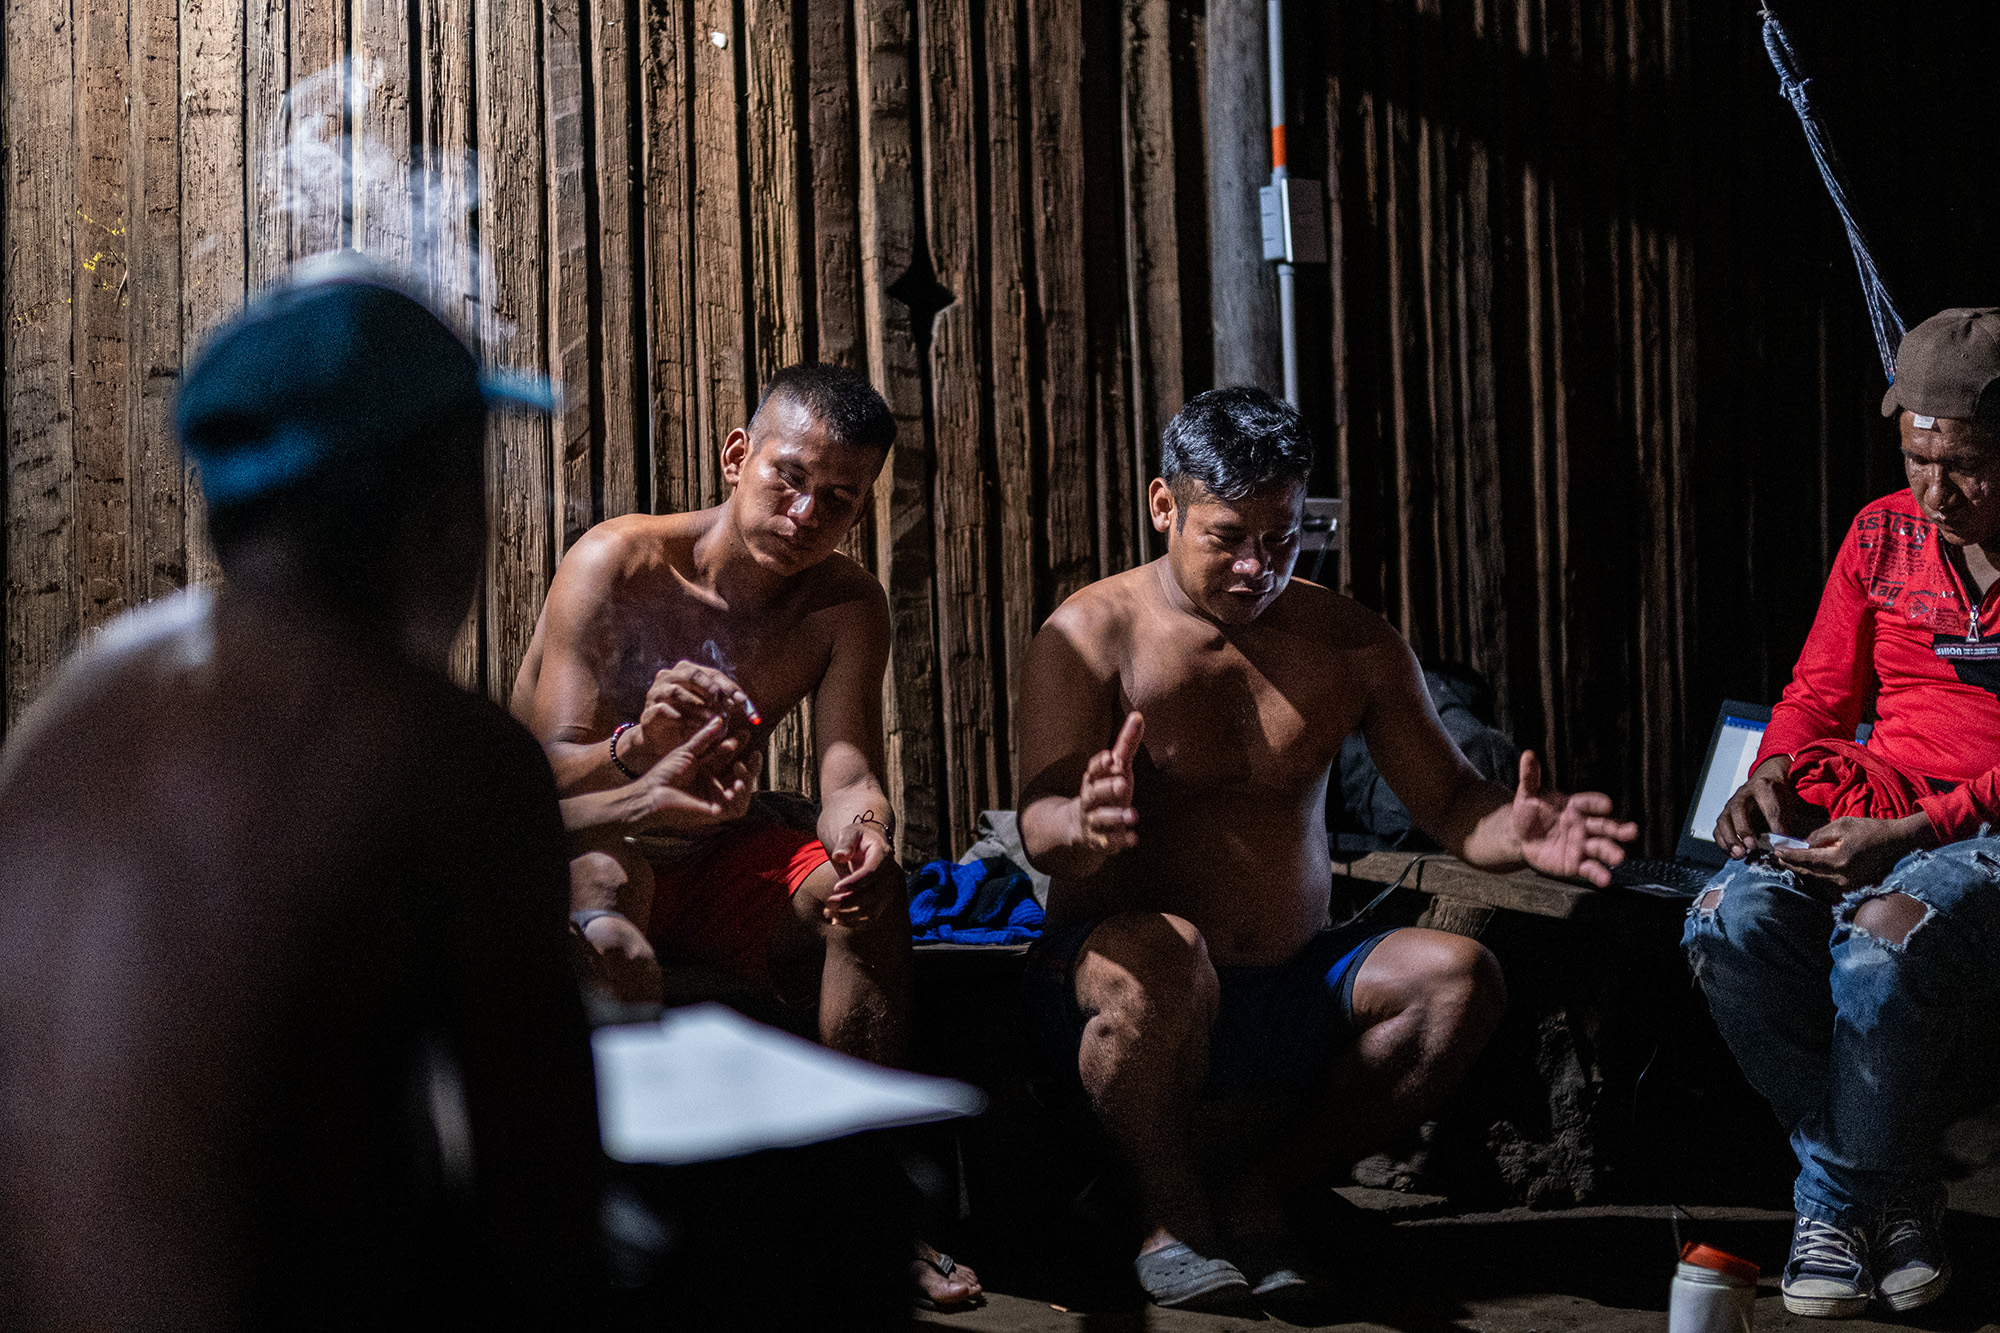 El tabaco y el mambe son usados por los hombres durante una reunión entre las comunidades de Curare y Boricada en la maloca de Curare. Crédito: Víctor Galeano.